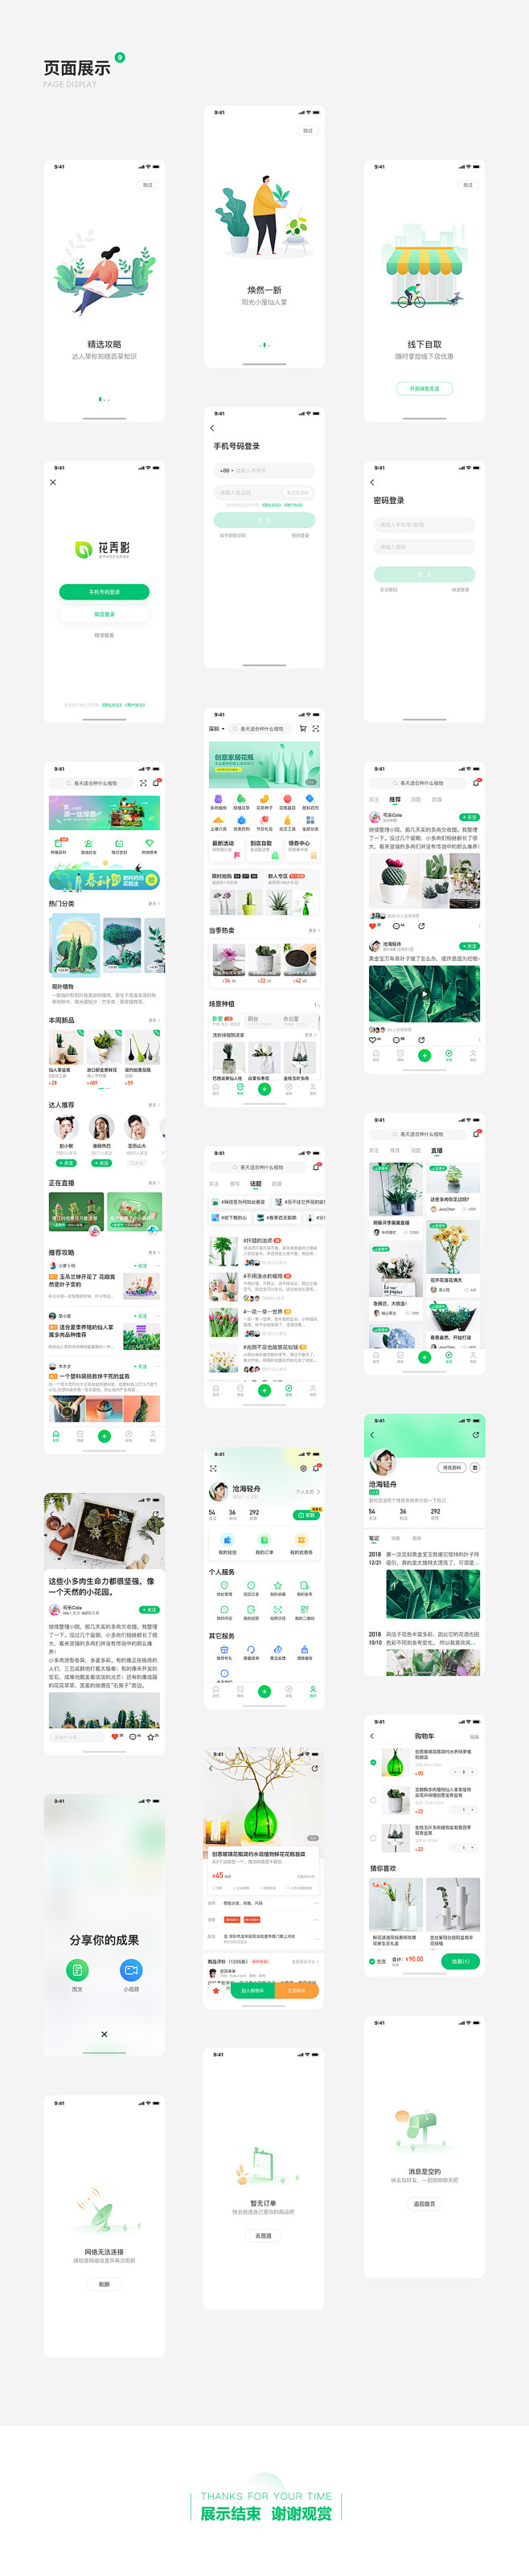 植物类社交APP概念设计-UI中国用户体...